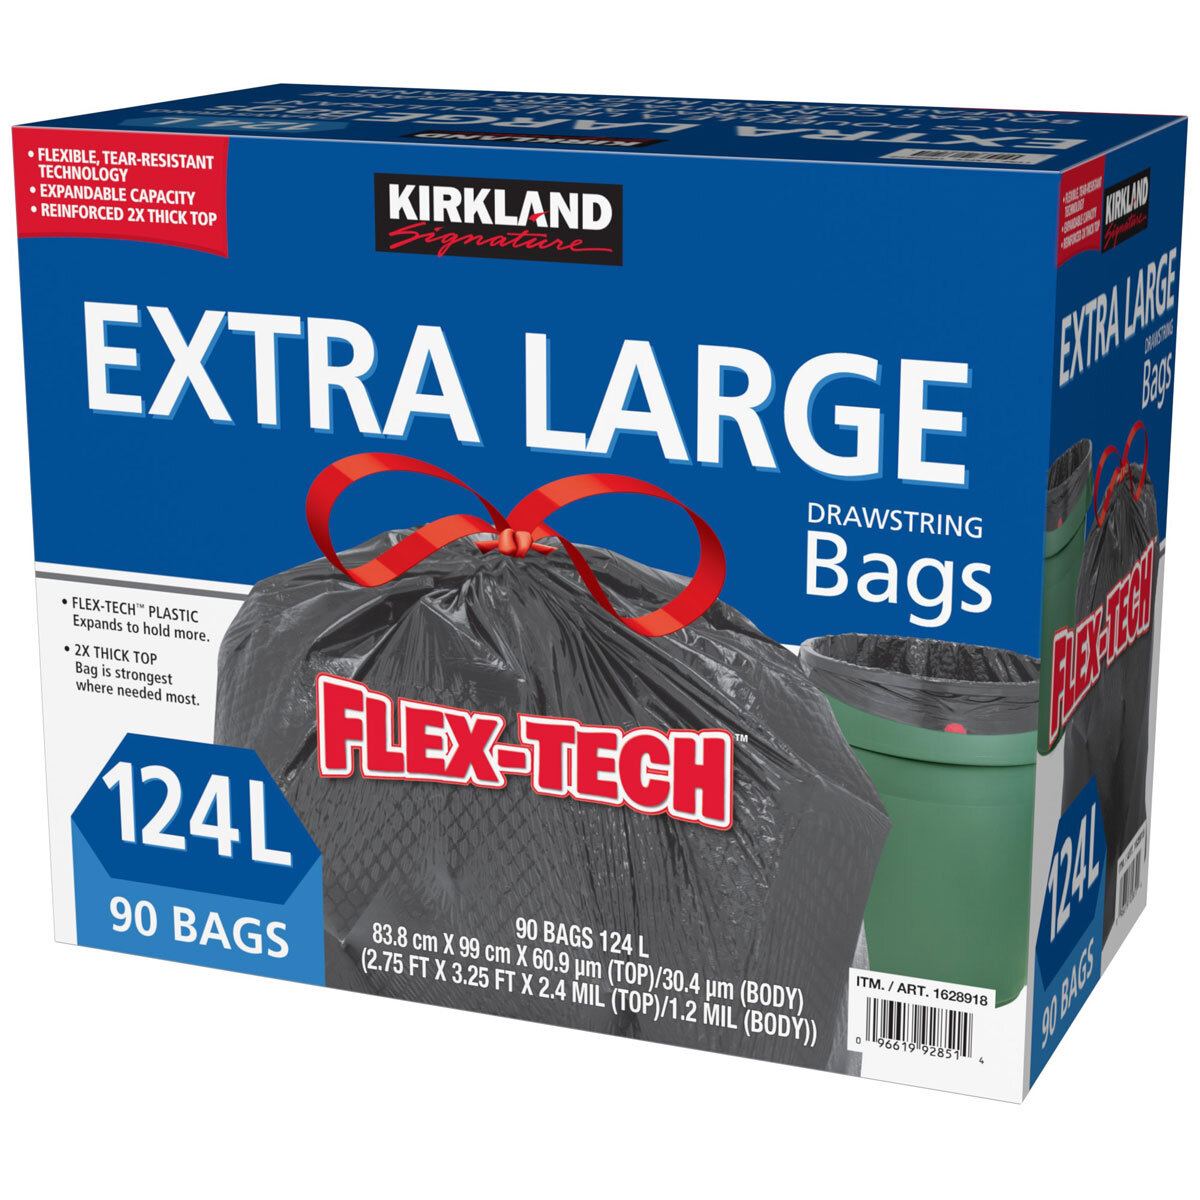 Flex-Tech Plastic Bags